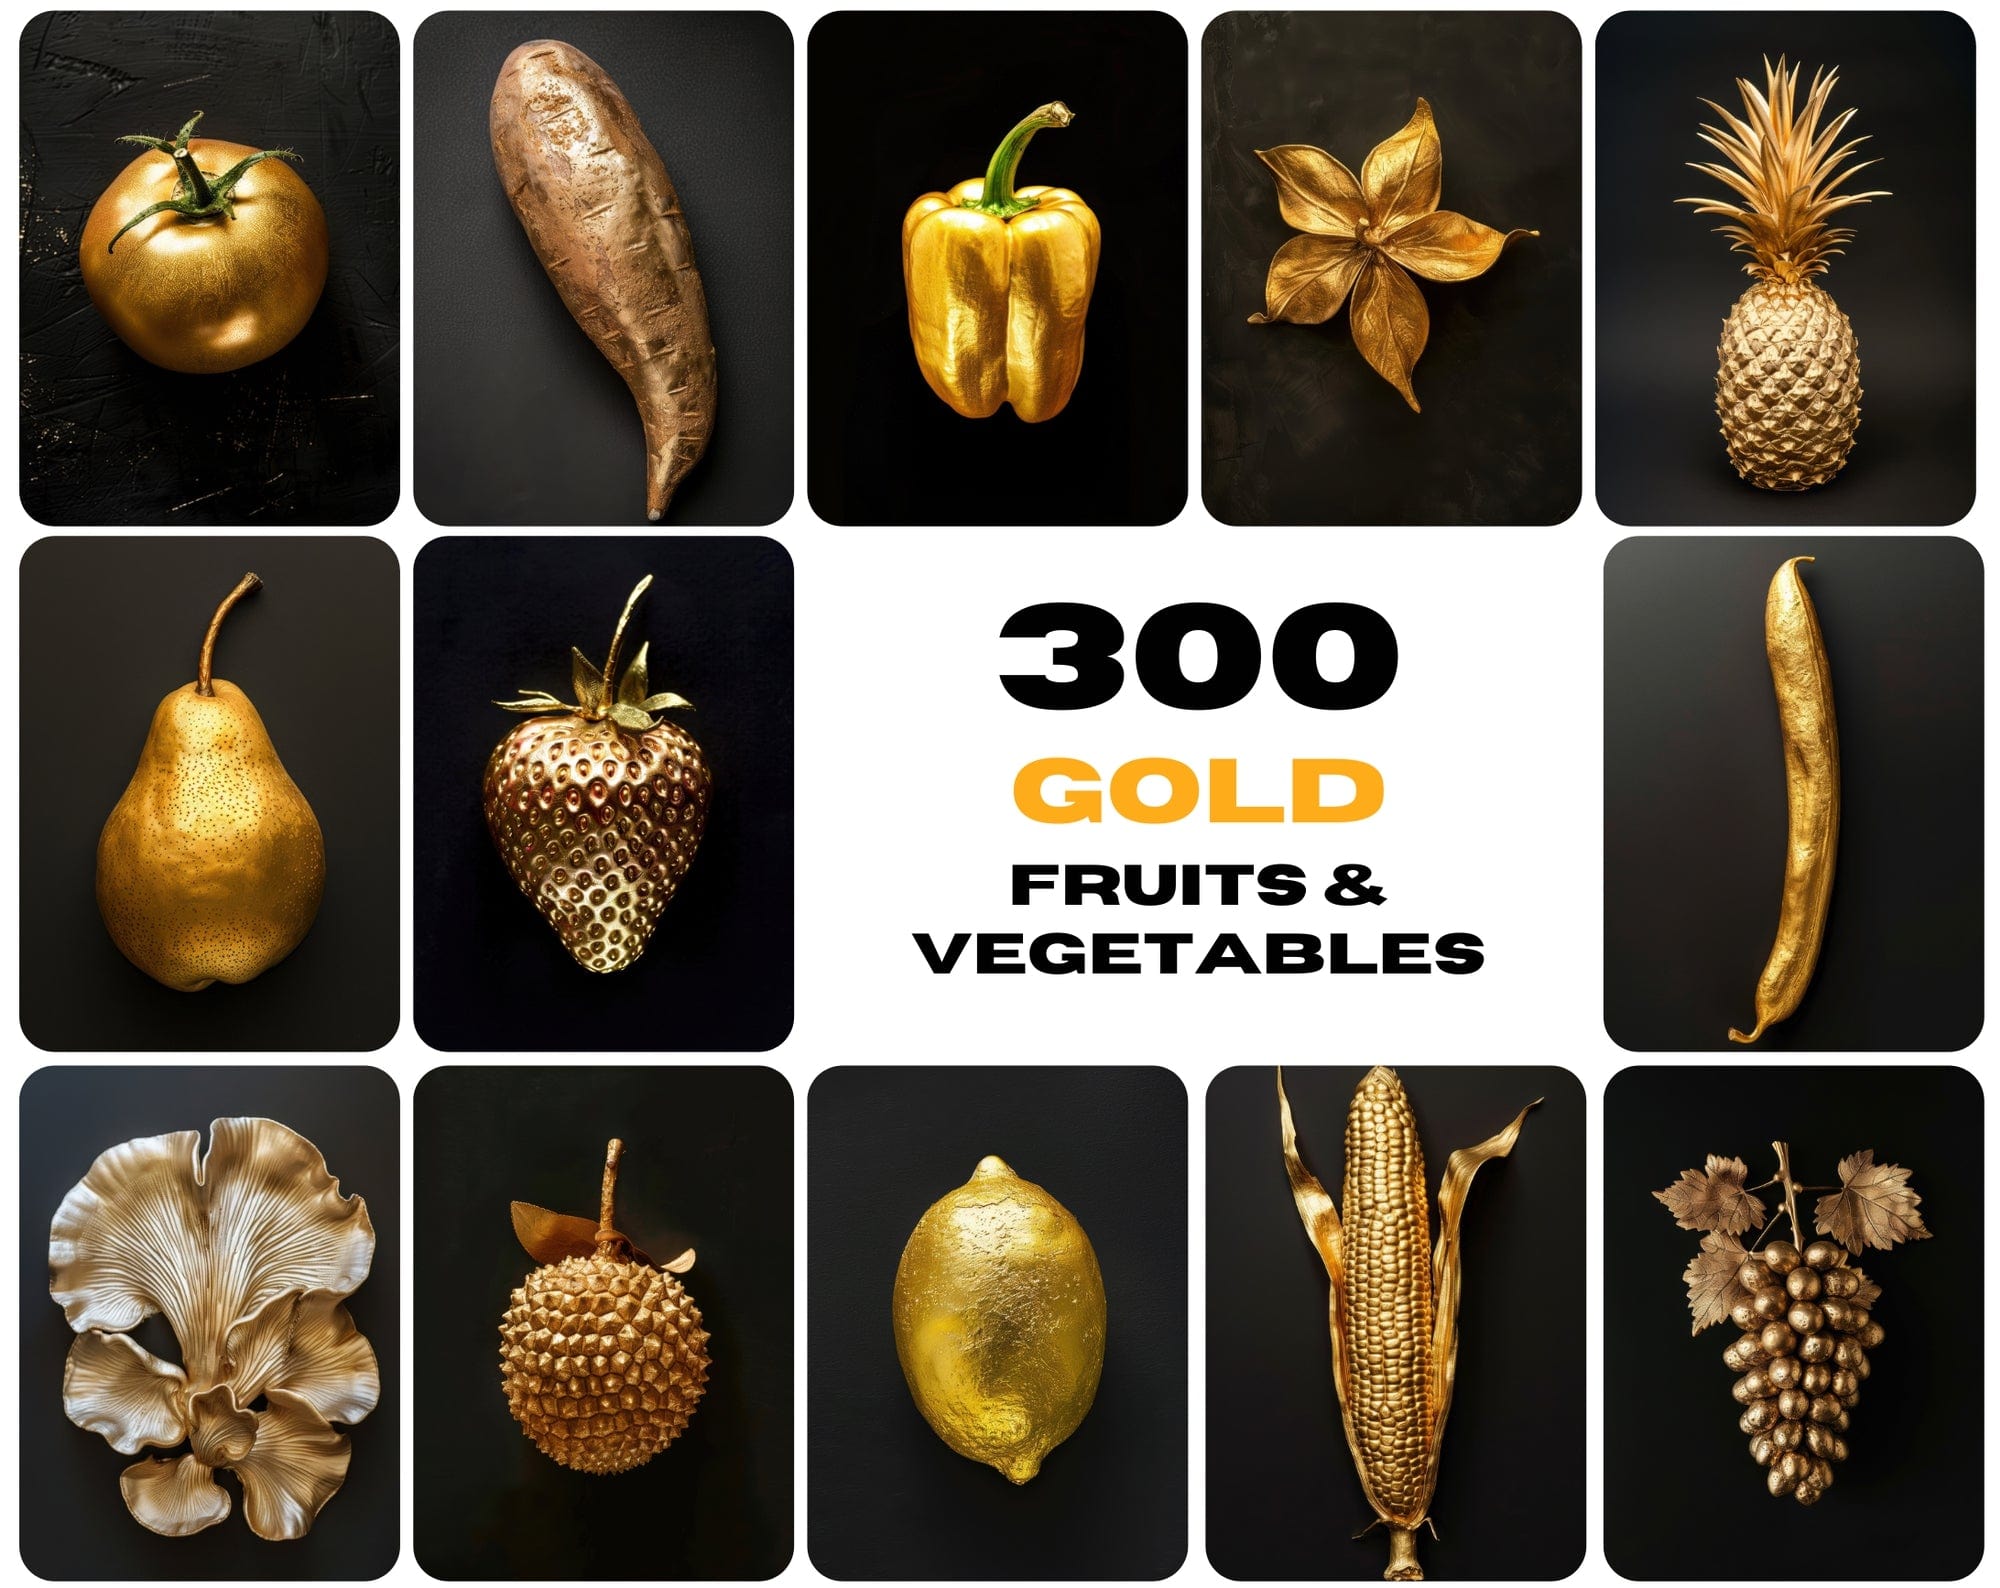 300 Gold Fruits & Vegetables Images Digital Download Sumobundle